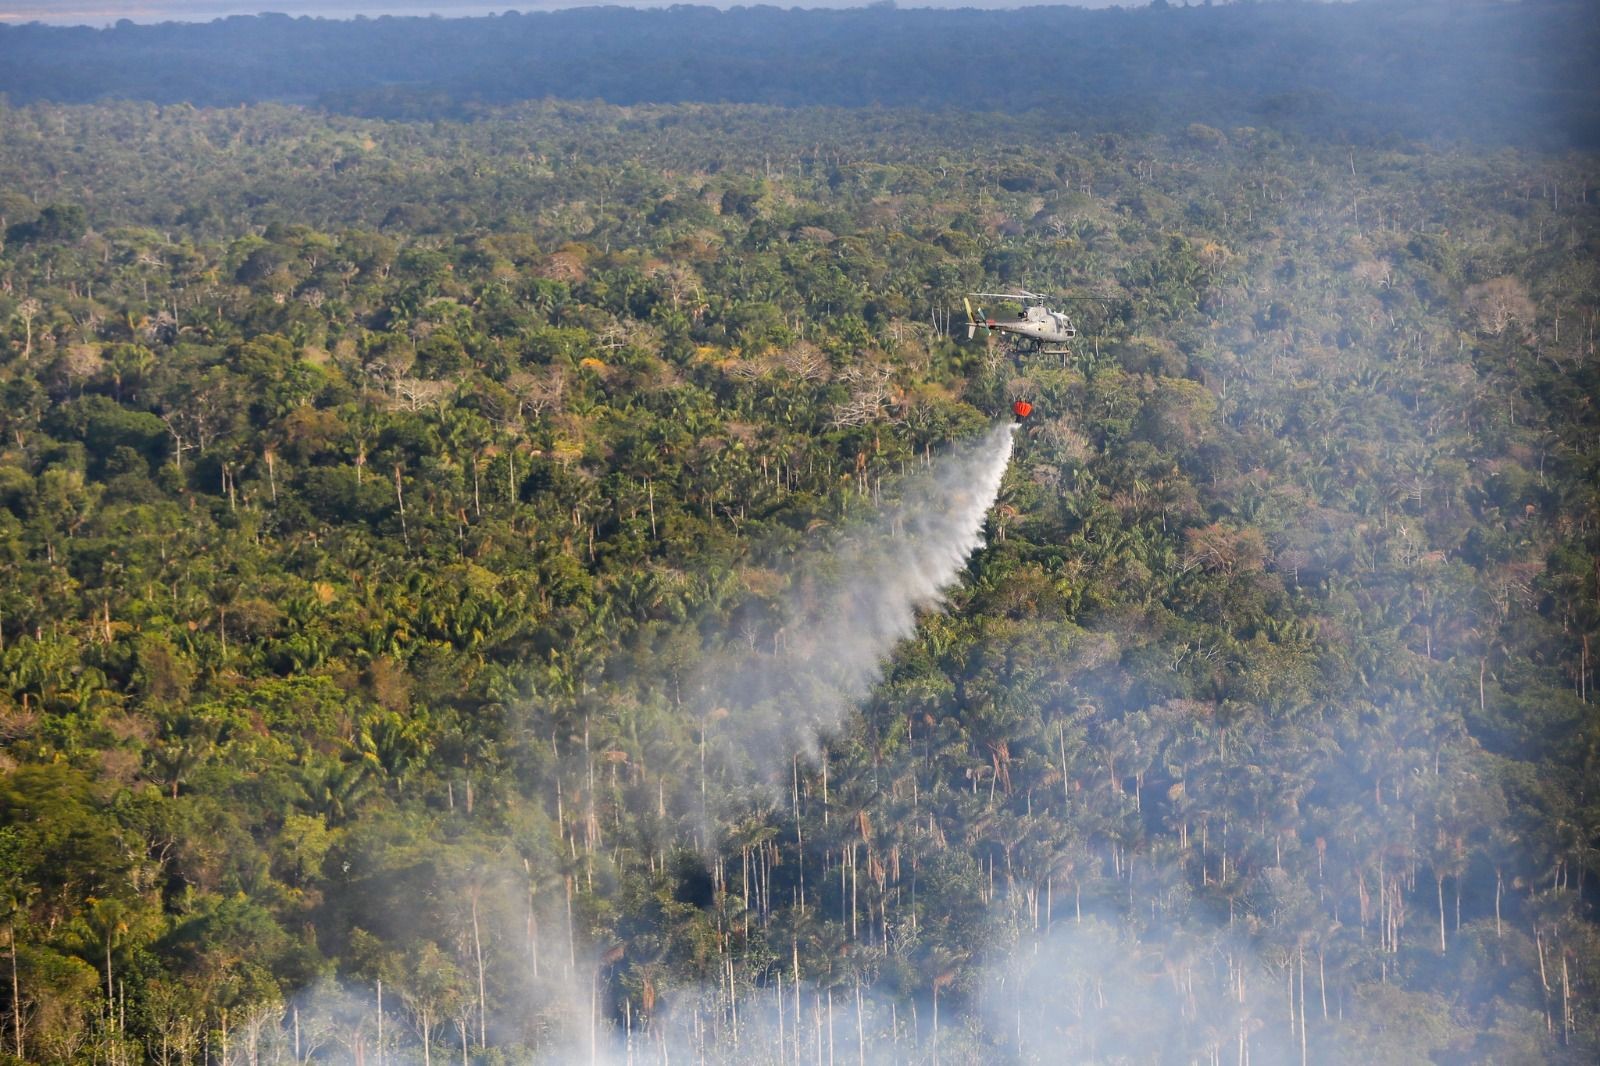 Helicópteros da Marinha intensificam combate às queimadas no Amazonas, diz governo